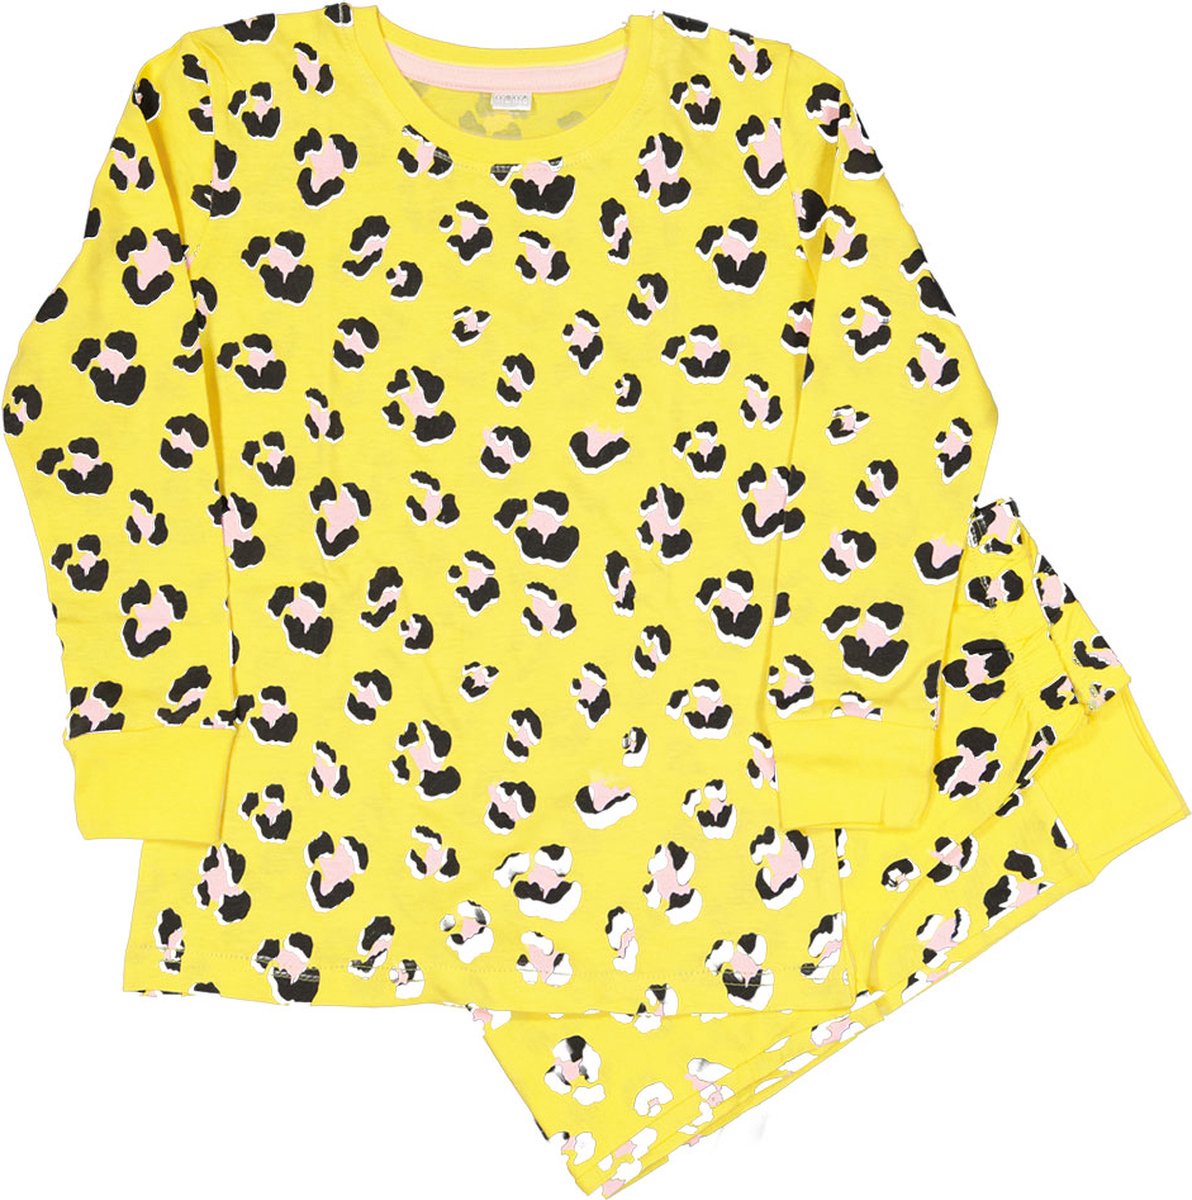 Zeeman kinder meisjes pyjama set - geel - maat 98/104